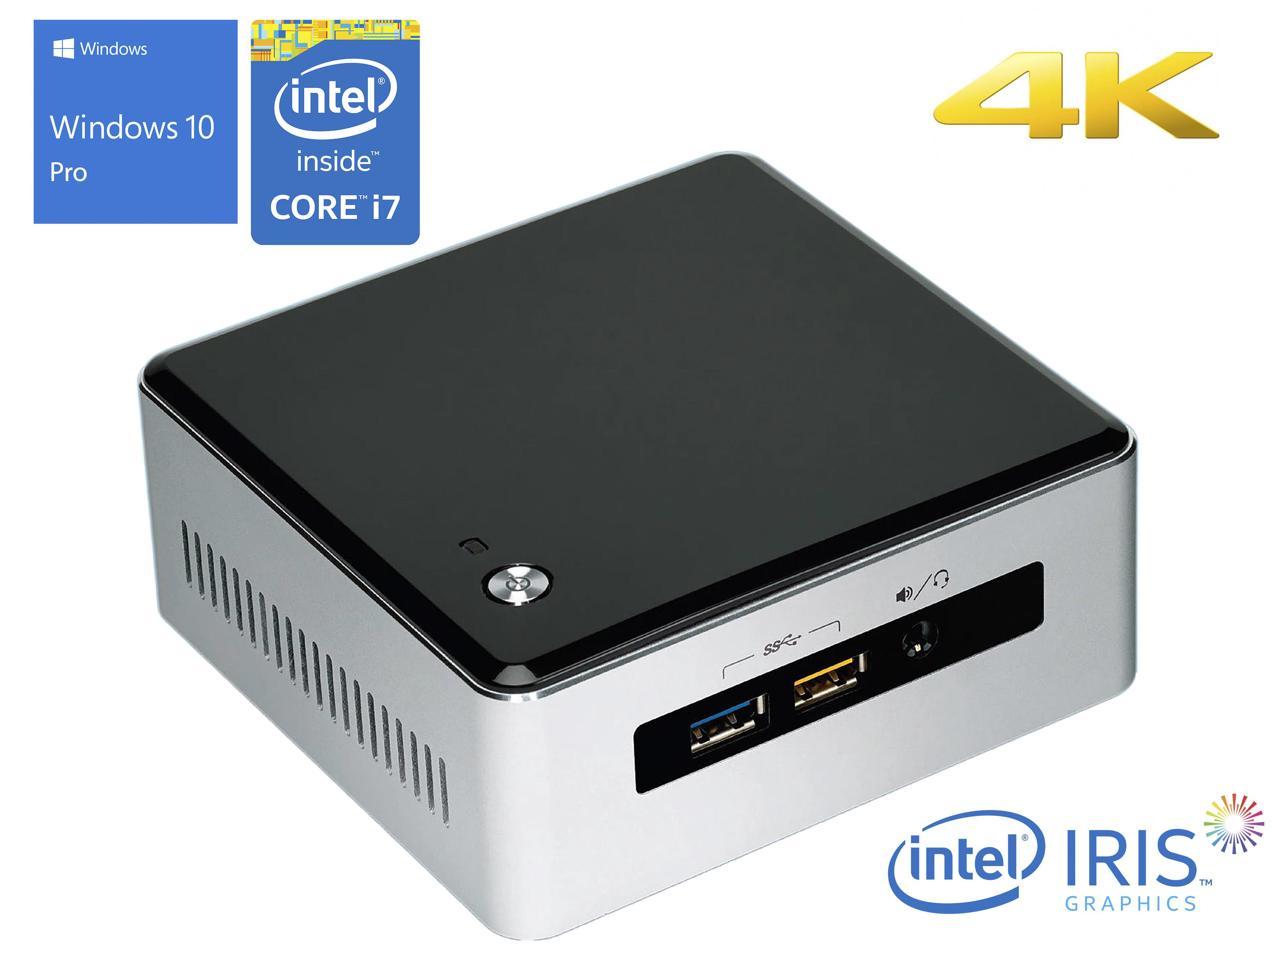 Intel NUC5i7RYH Mini PC, Intel Core i7-5557U Upto 3.40GHz, 16GB RAM, 256GB SSD, Mini HDMI, Mini DisplayPort, Wi-Fi, Bluetooth, Windows 10 Pro